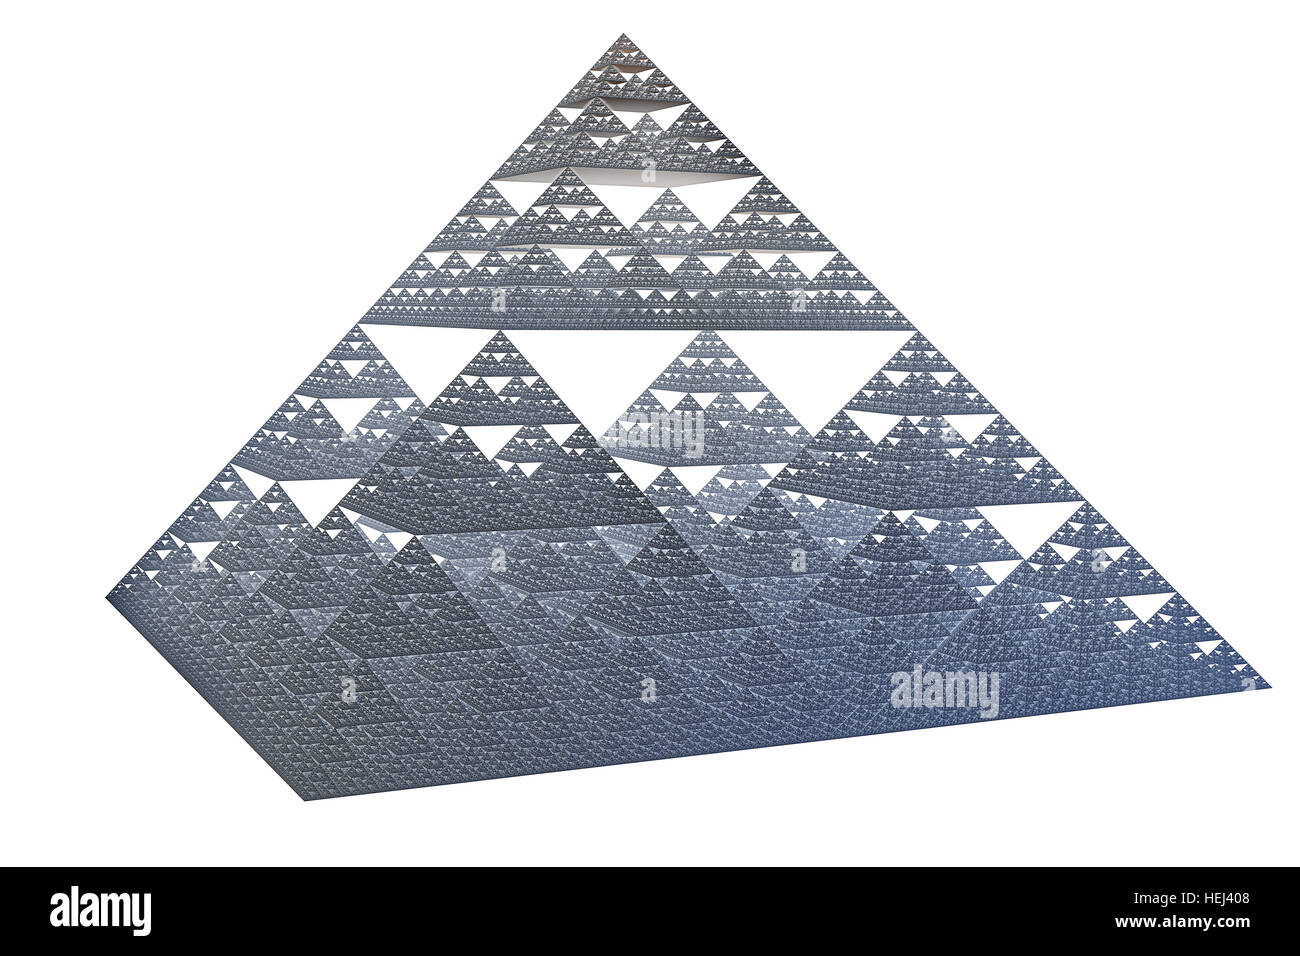 El tetraedro de sierpinski fractal forma iterada Foto de stock